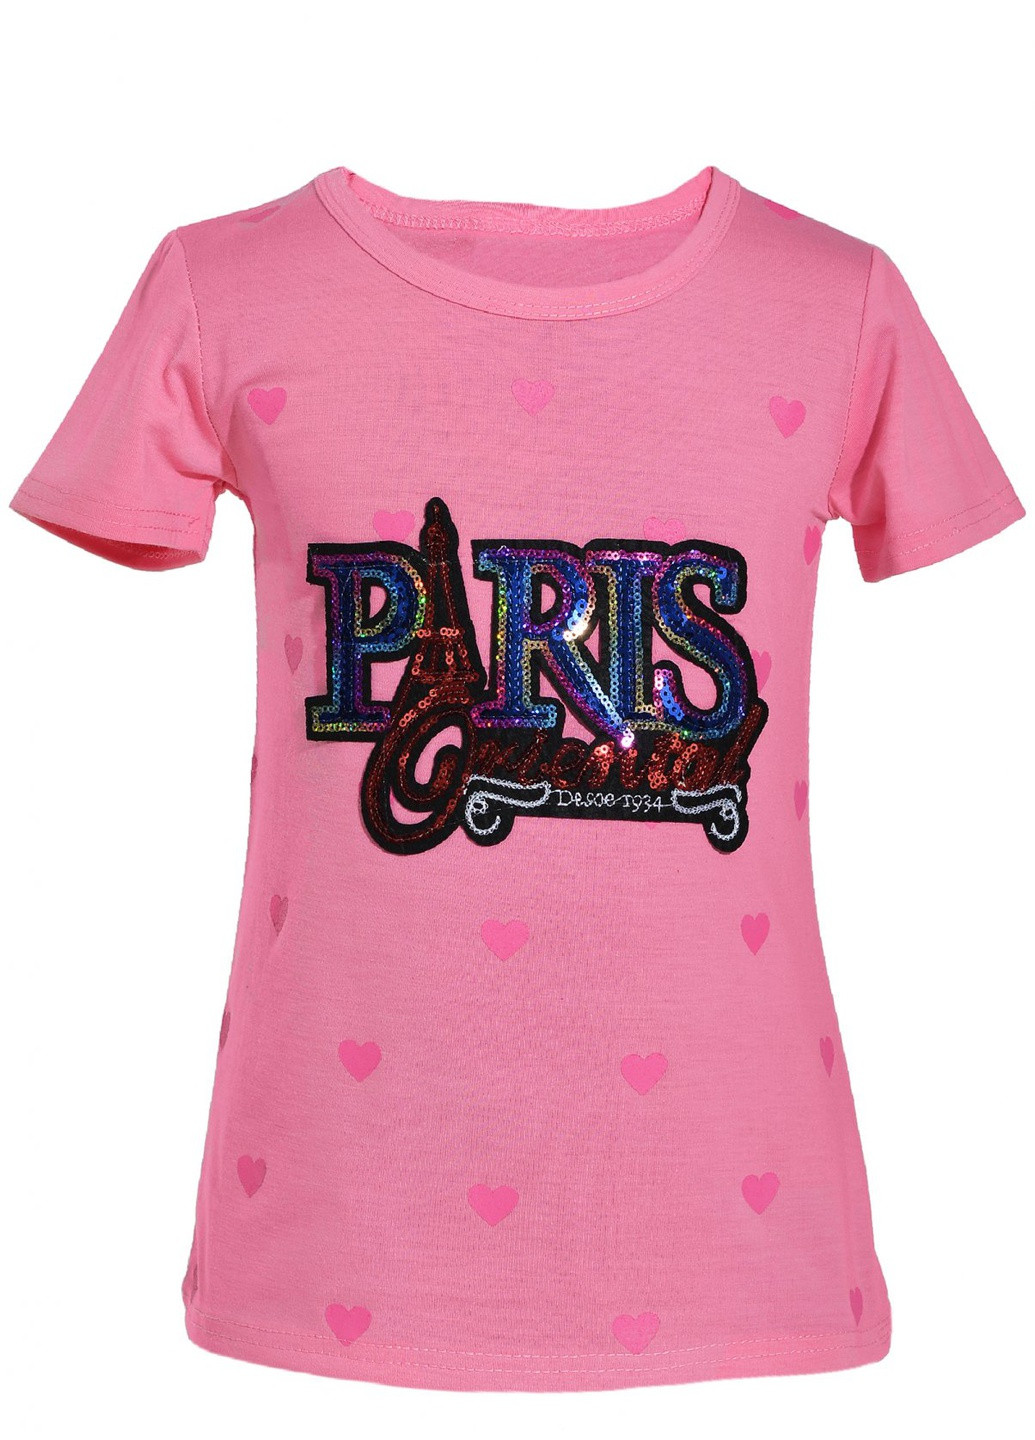 Розовая футболки футболка на дівчаток (париж)16888-731 Lemanta